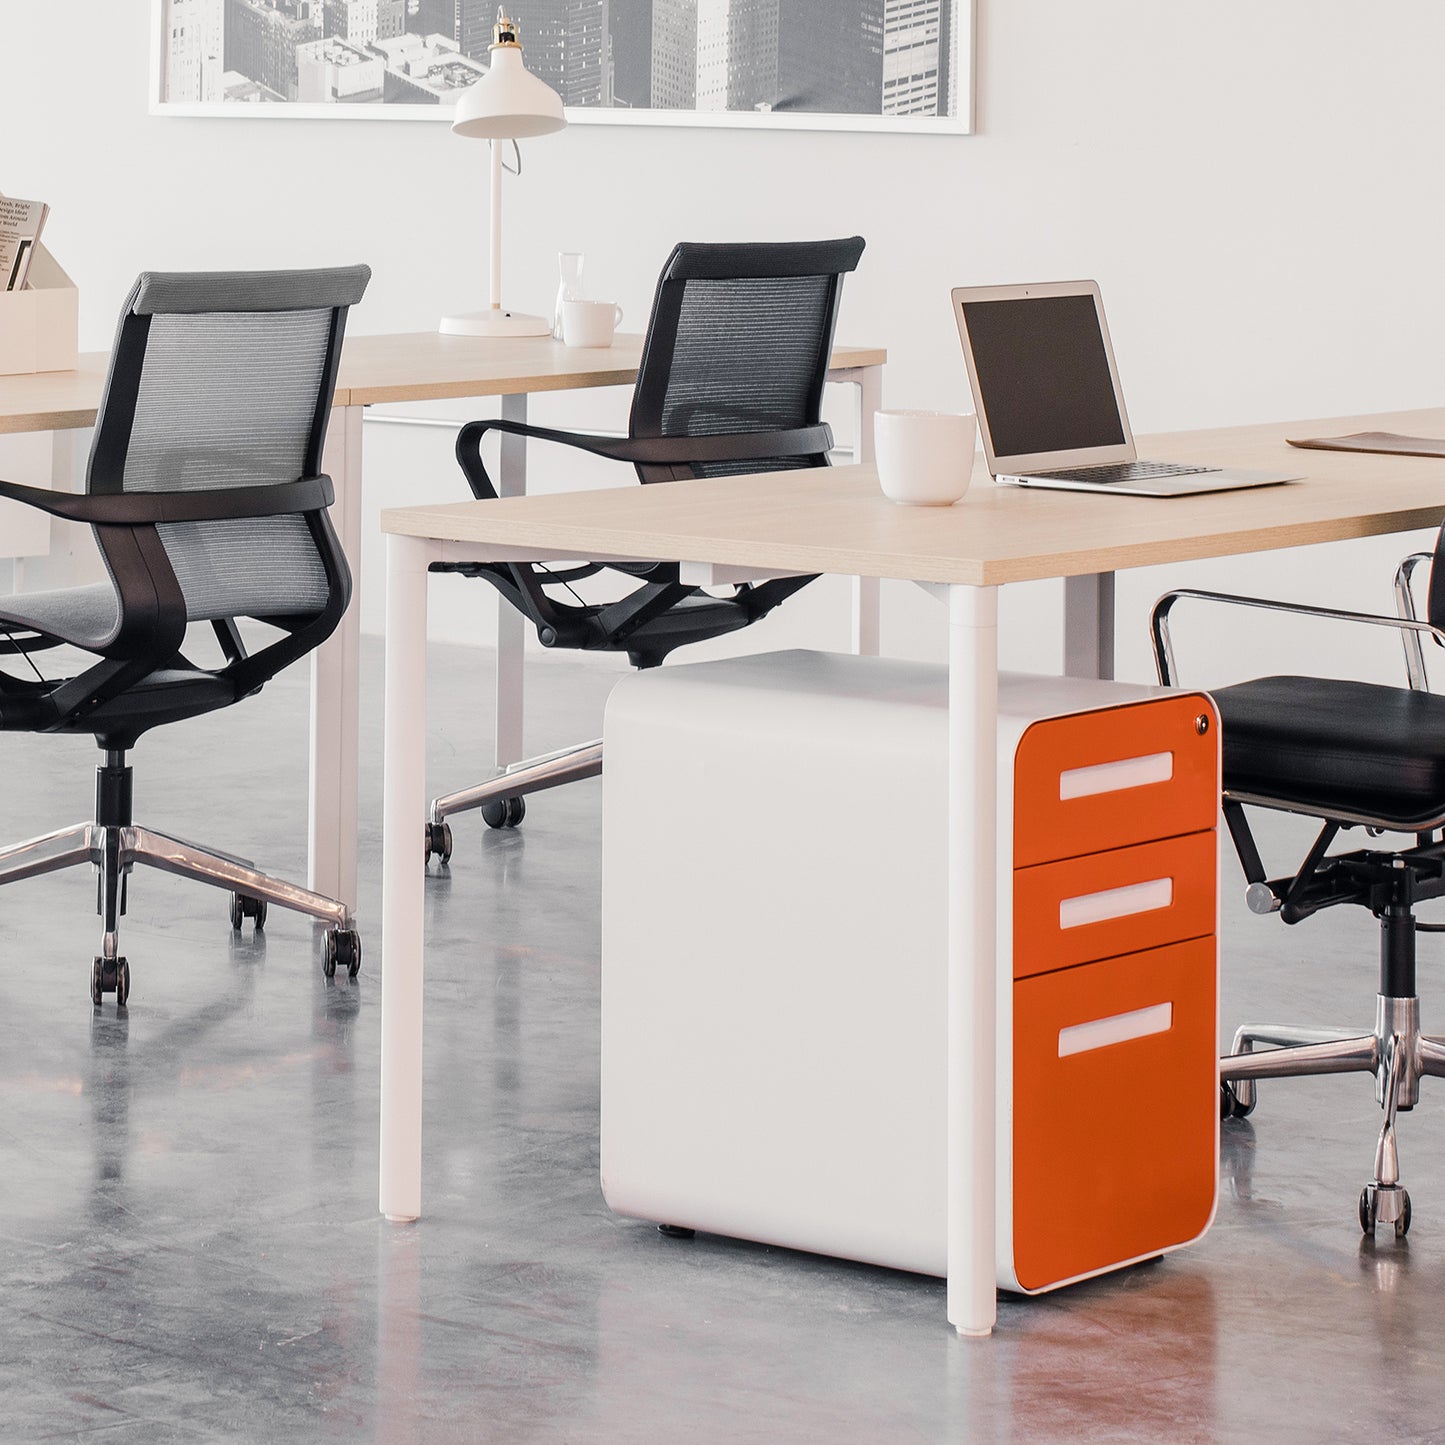 Hudson Executive Desk (White Top)